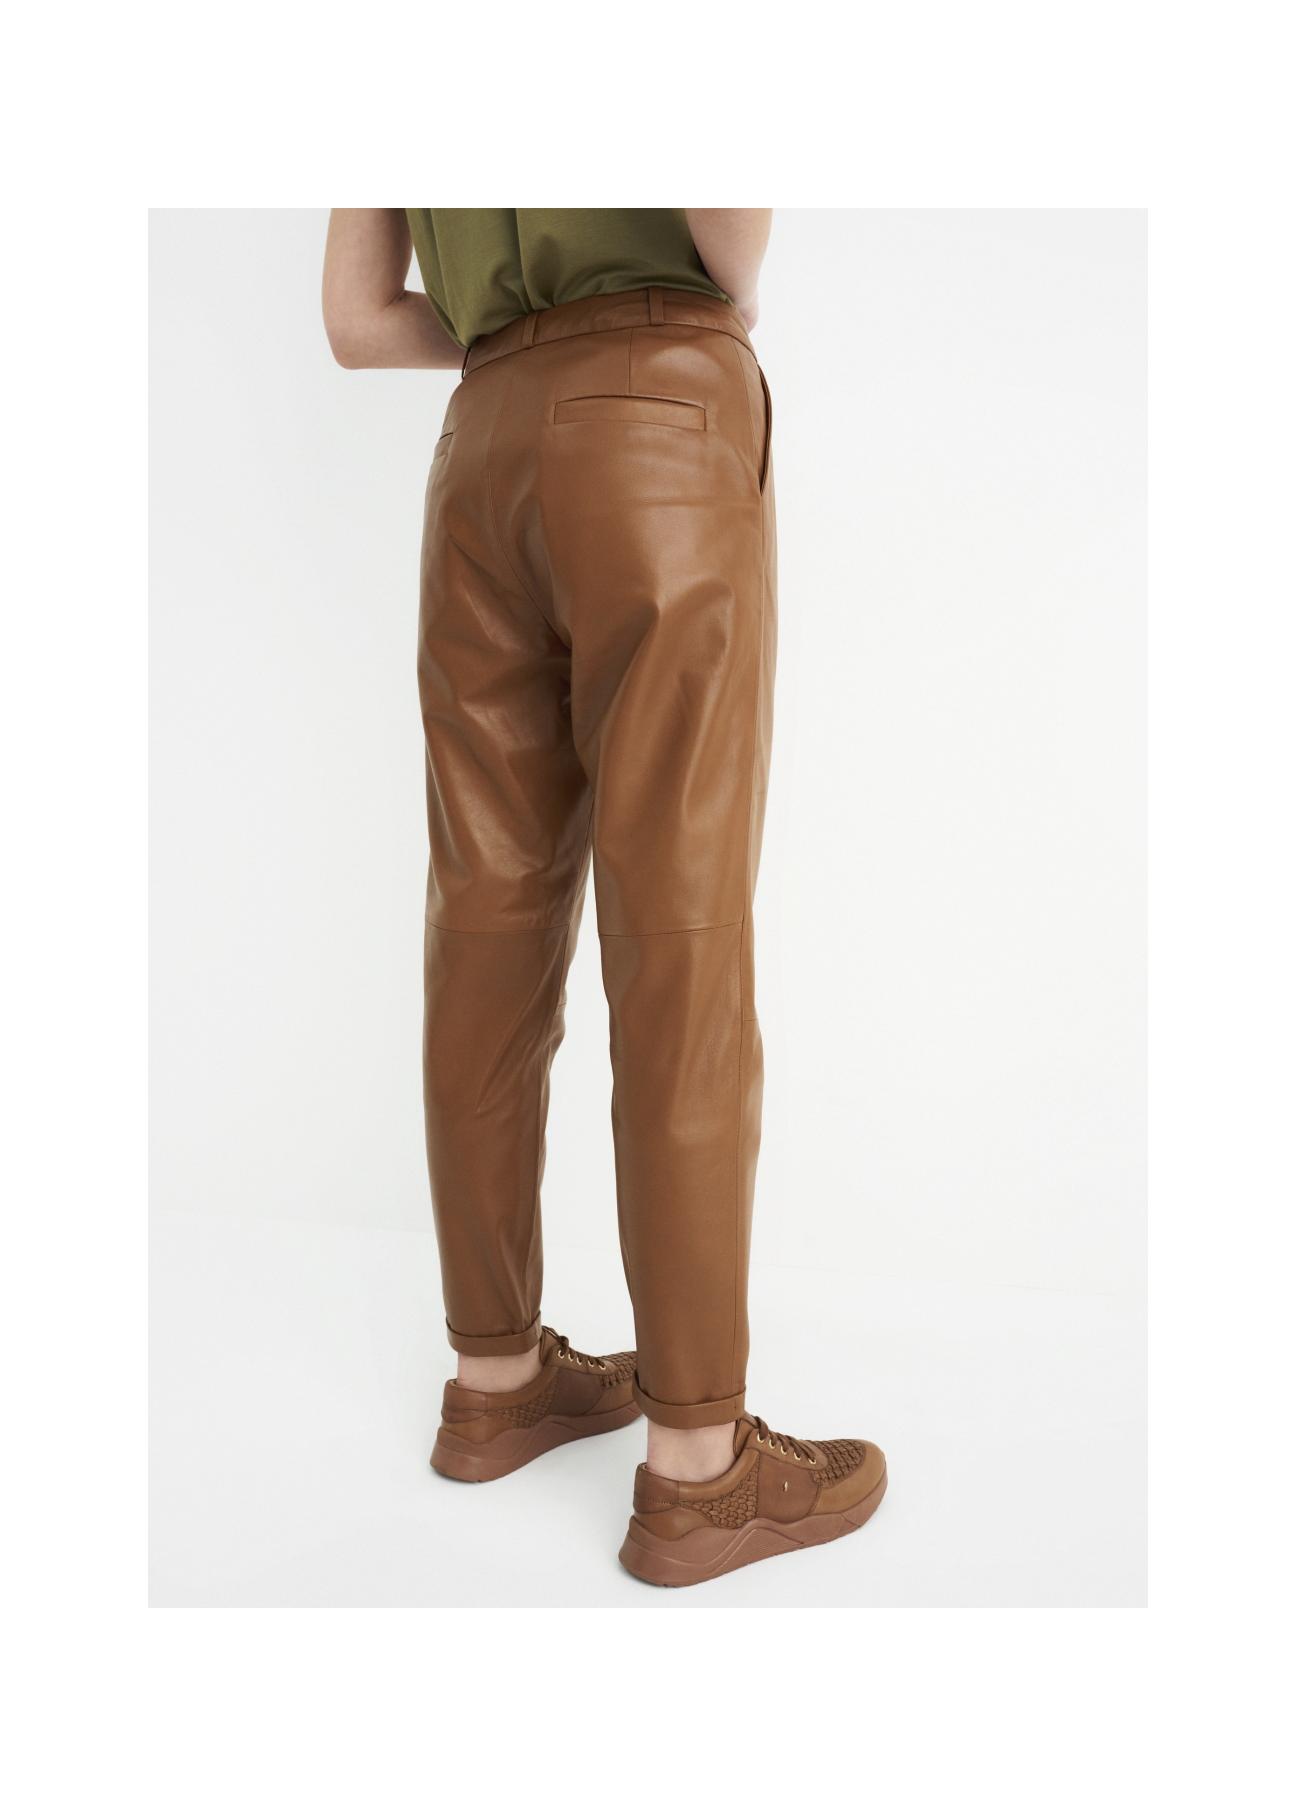 Spodnie skórzane karmelowe damskie SPODS-0022-1103(W22)-05